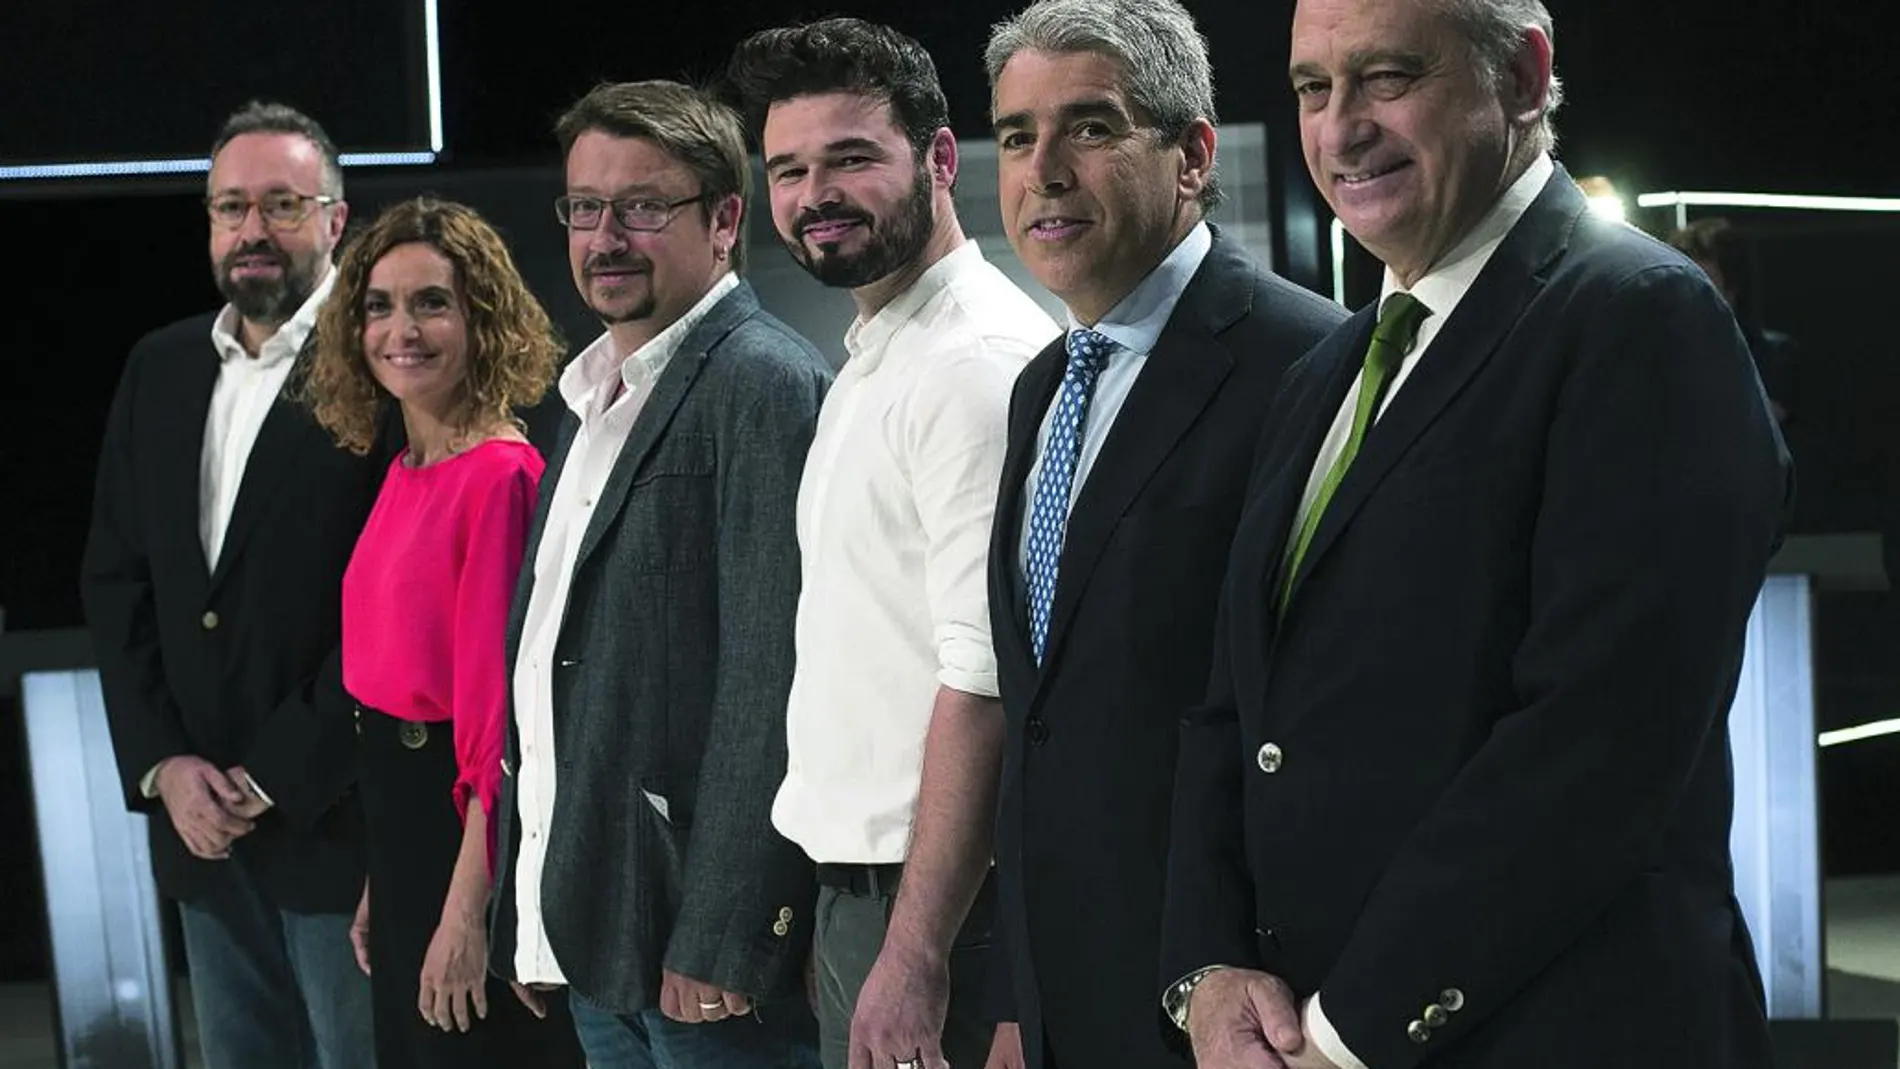 De izquierda a derecha, Girauta (C’s), Batet (PSC), Domènech (En Comú Podem), Rufián (ERC), Homs (CDC) y Fernández Díaz (PP), ayer, antes de comenzar el debate celebrado en los estudios de TV3.